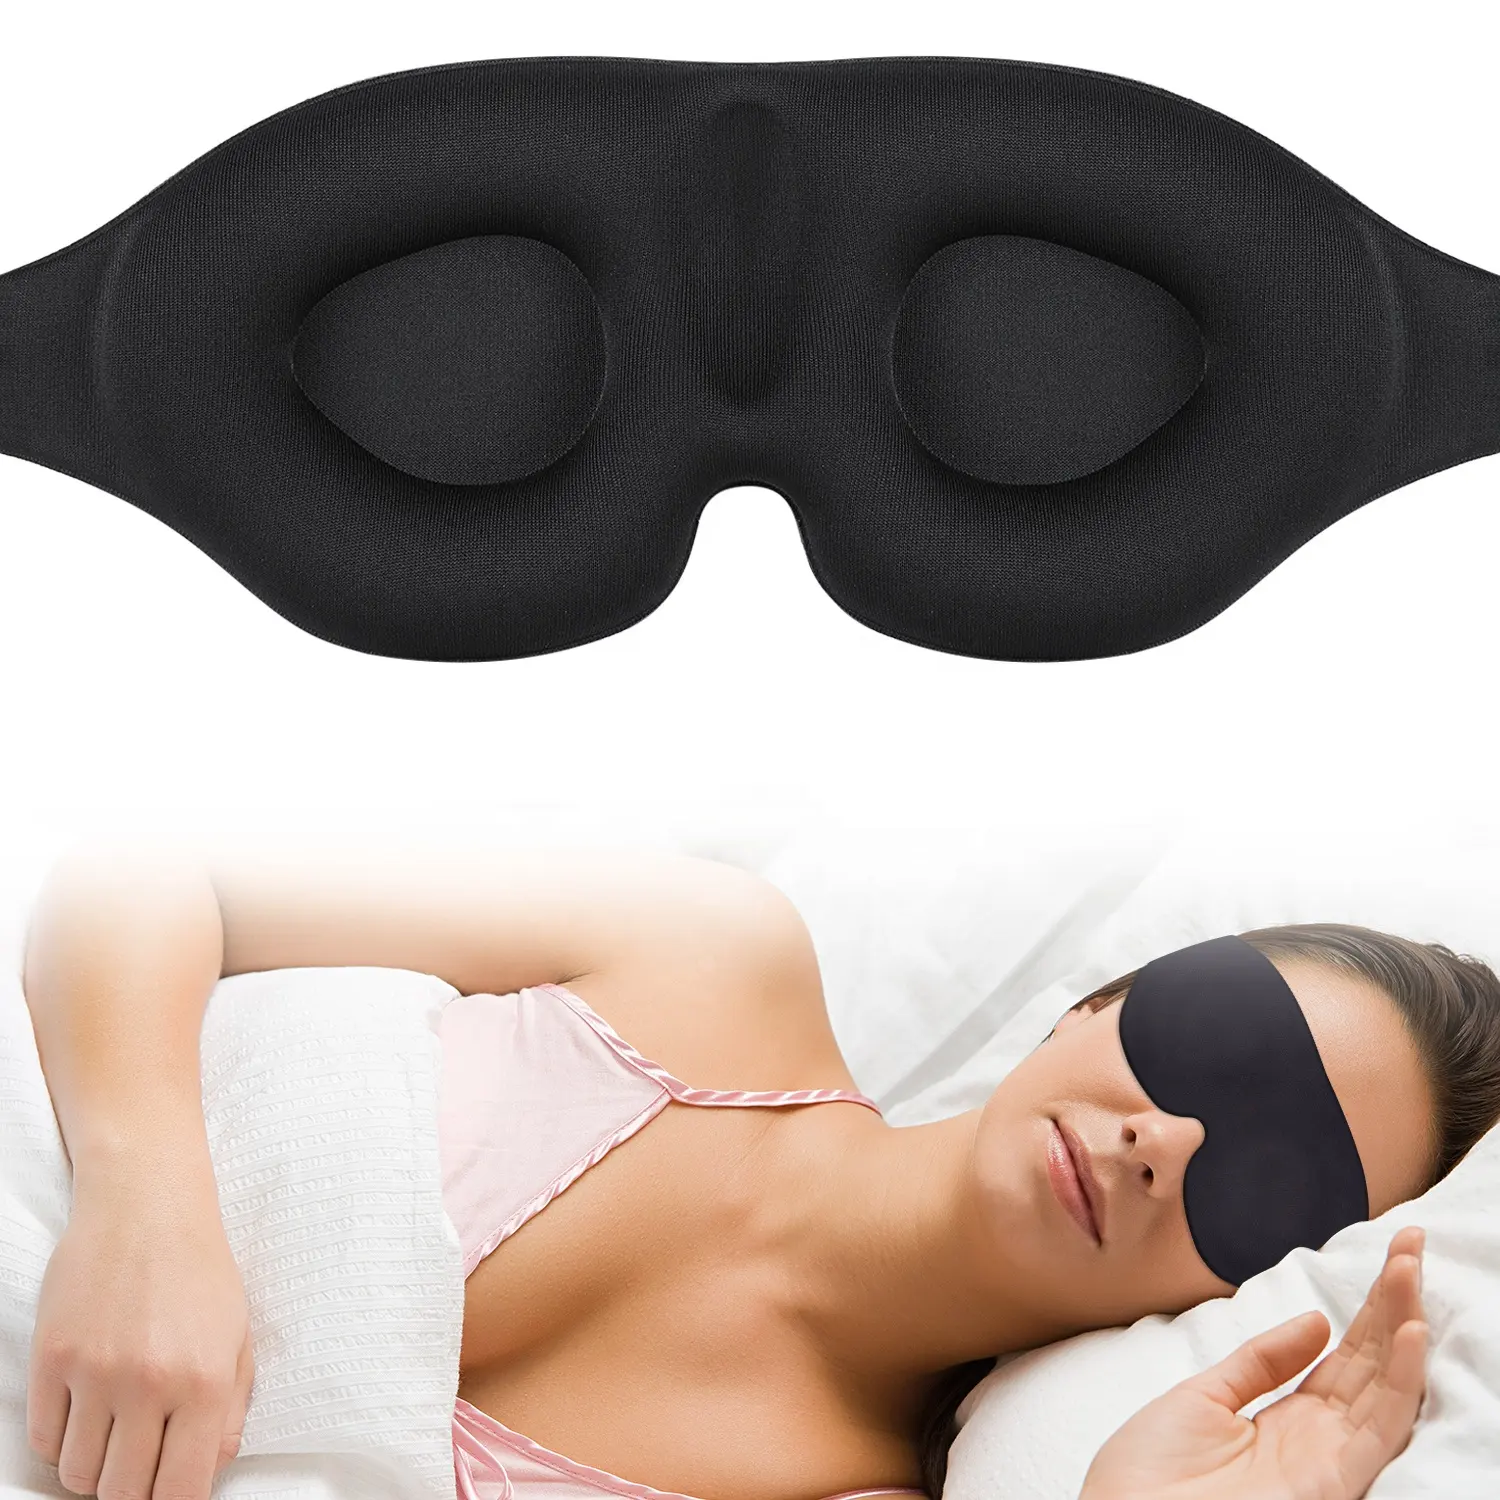 Маска для сна с фирменным логотипом, маска для сна с 3d-контурным колпачком, регулируемая маска для сна/самолета